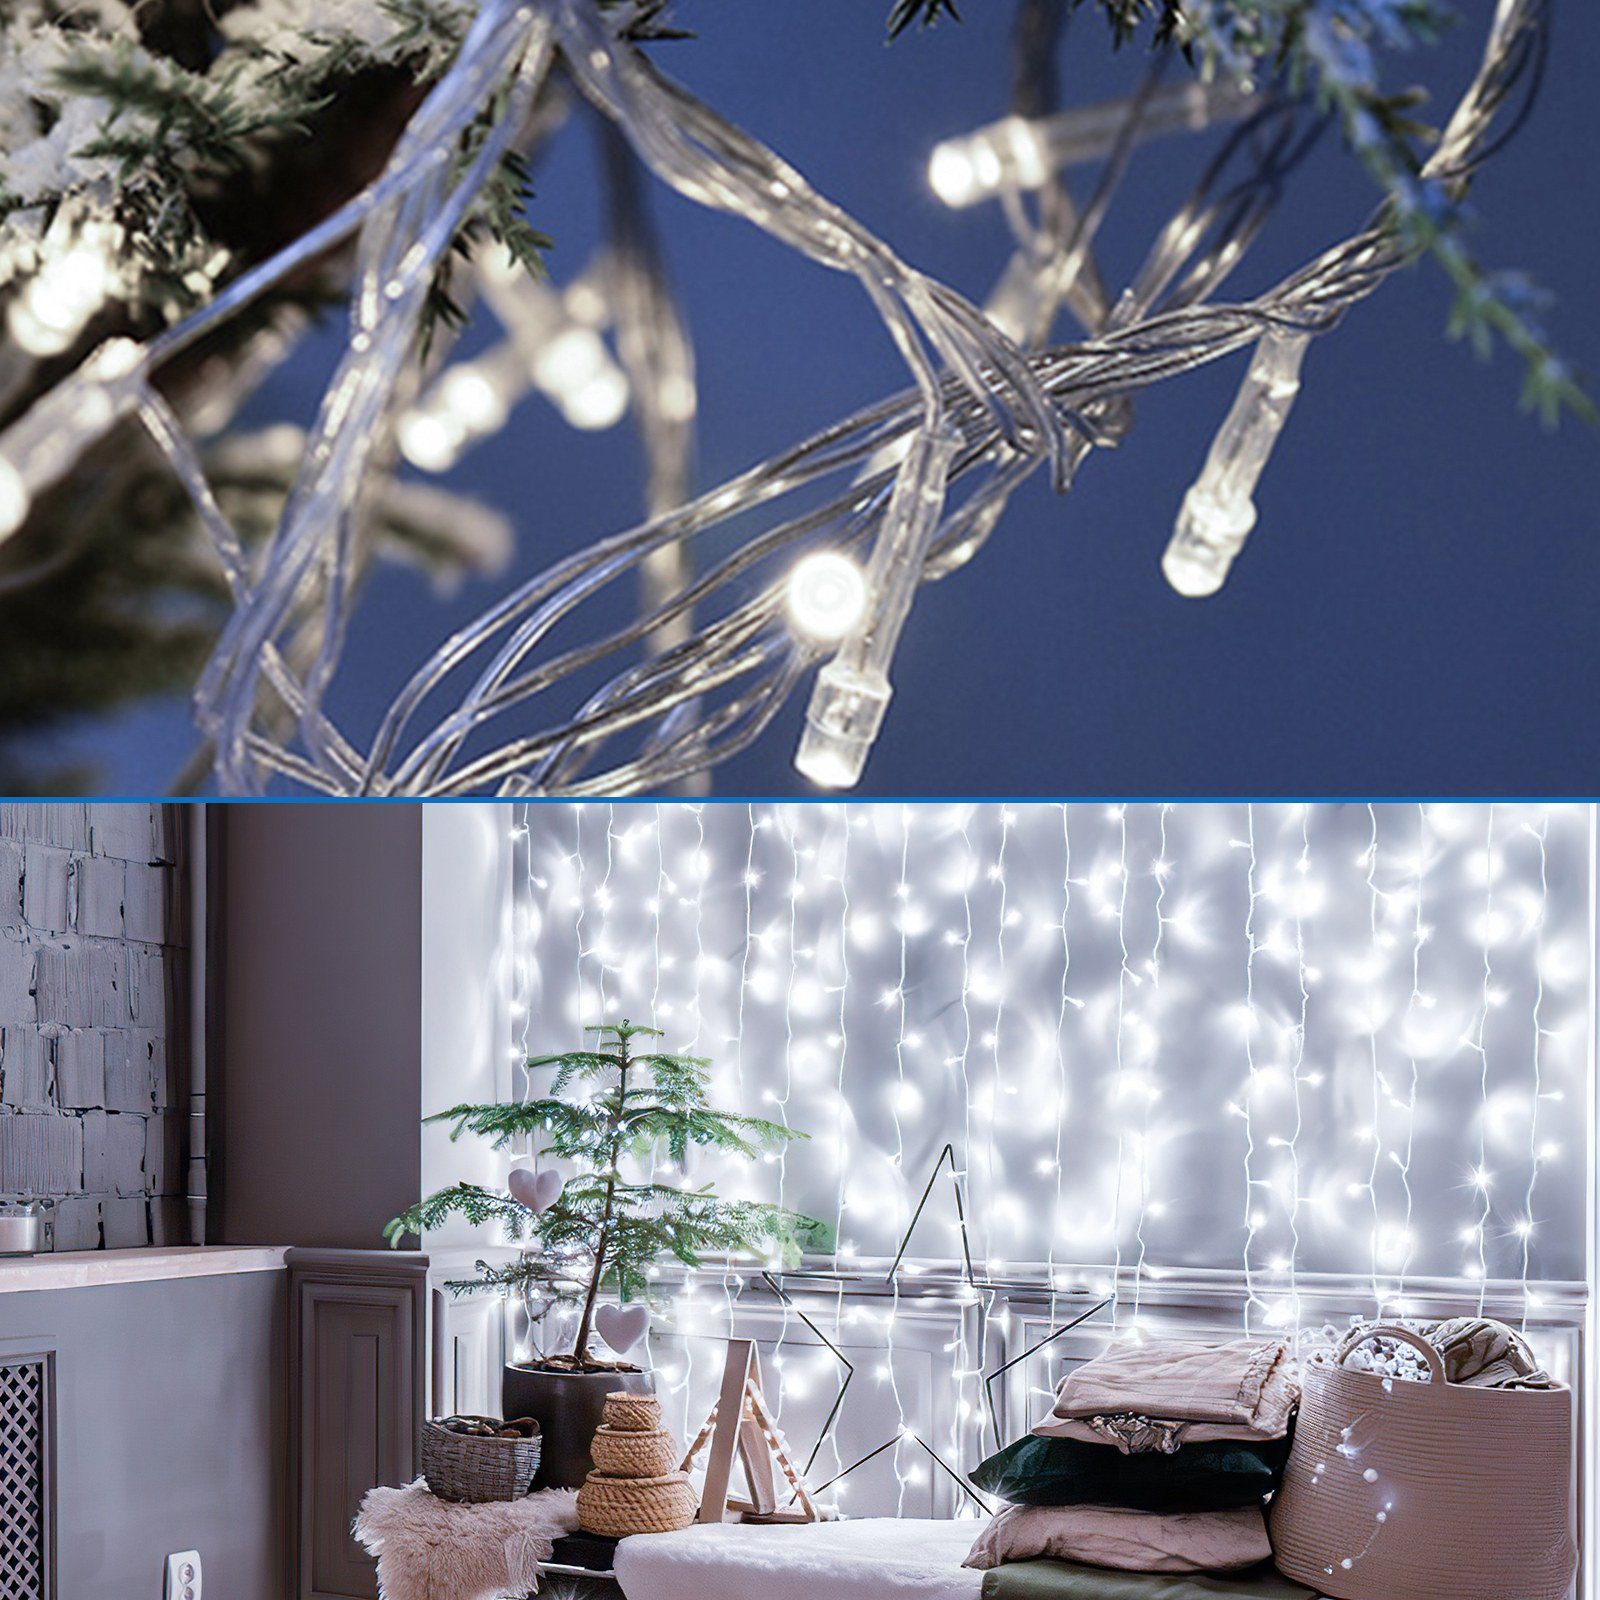 8 Eiszapfen Kaltweiß Clanmacy Fenster, verschiedene Deko Weihnachten 5-200m Lichterkette LED Eisregen Modi LED-Lichterkette